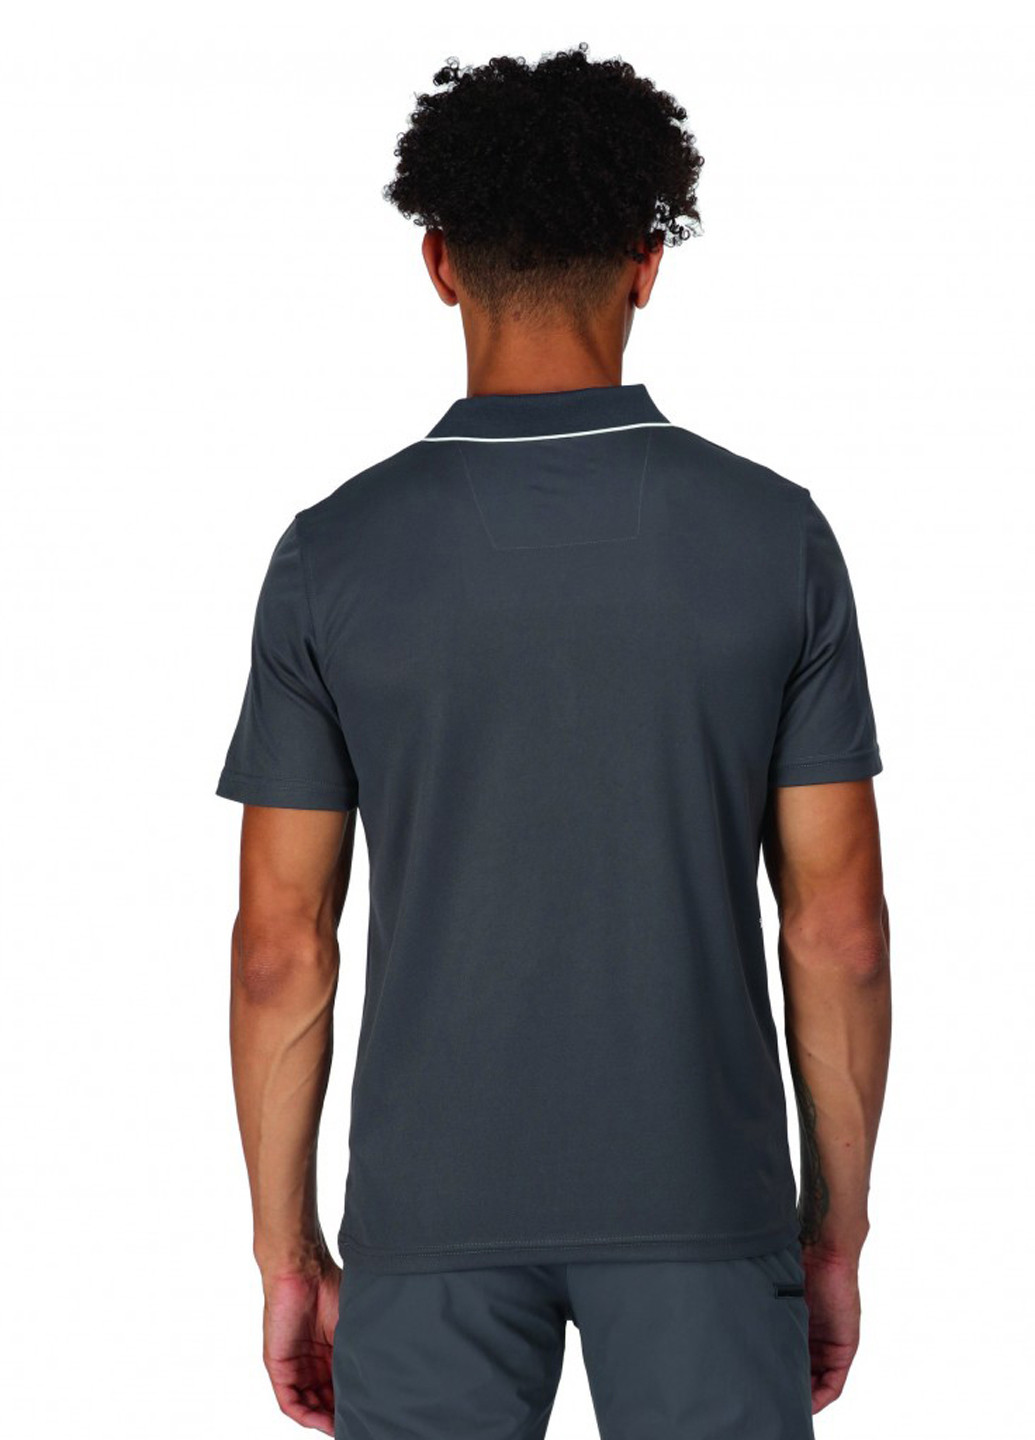 Серая футболка-поло для мужчин Regatta с логотипом